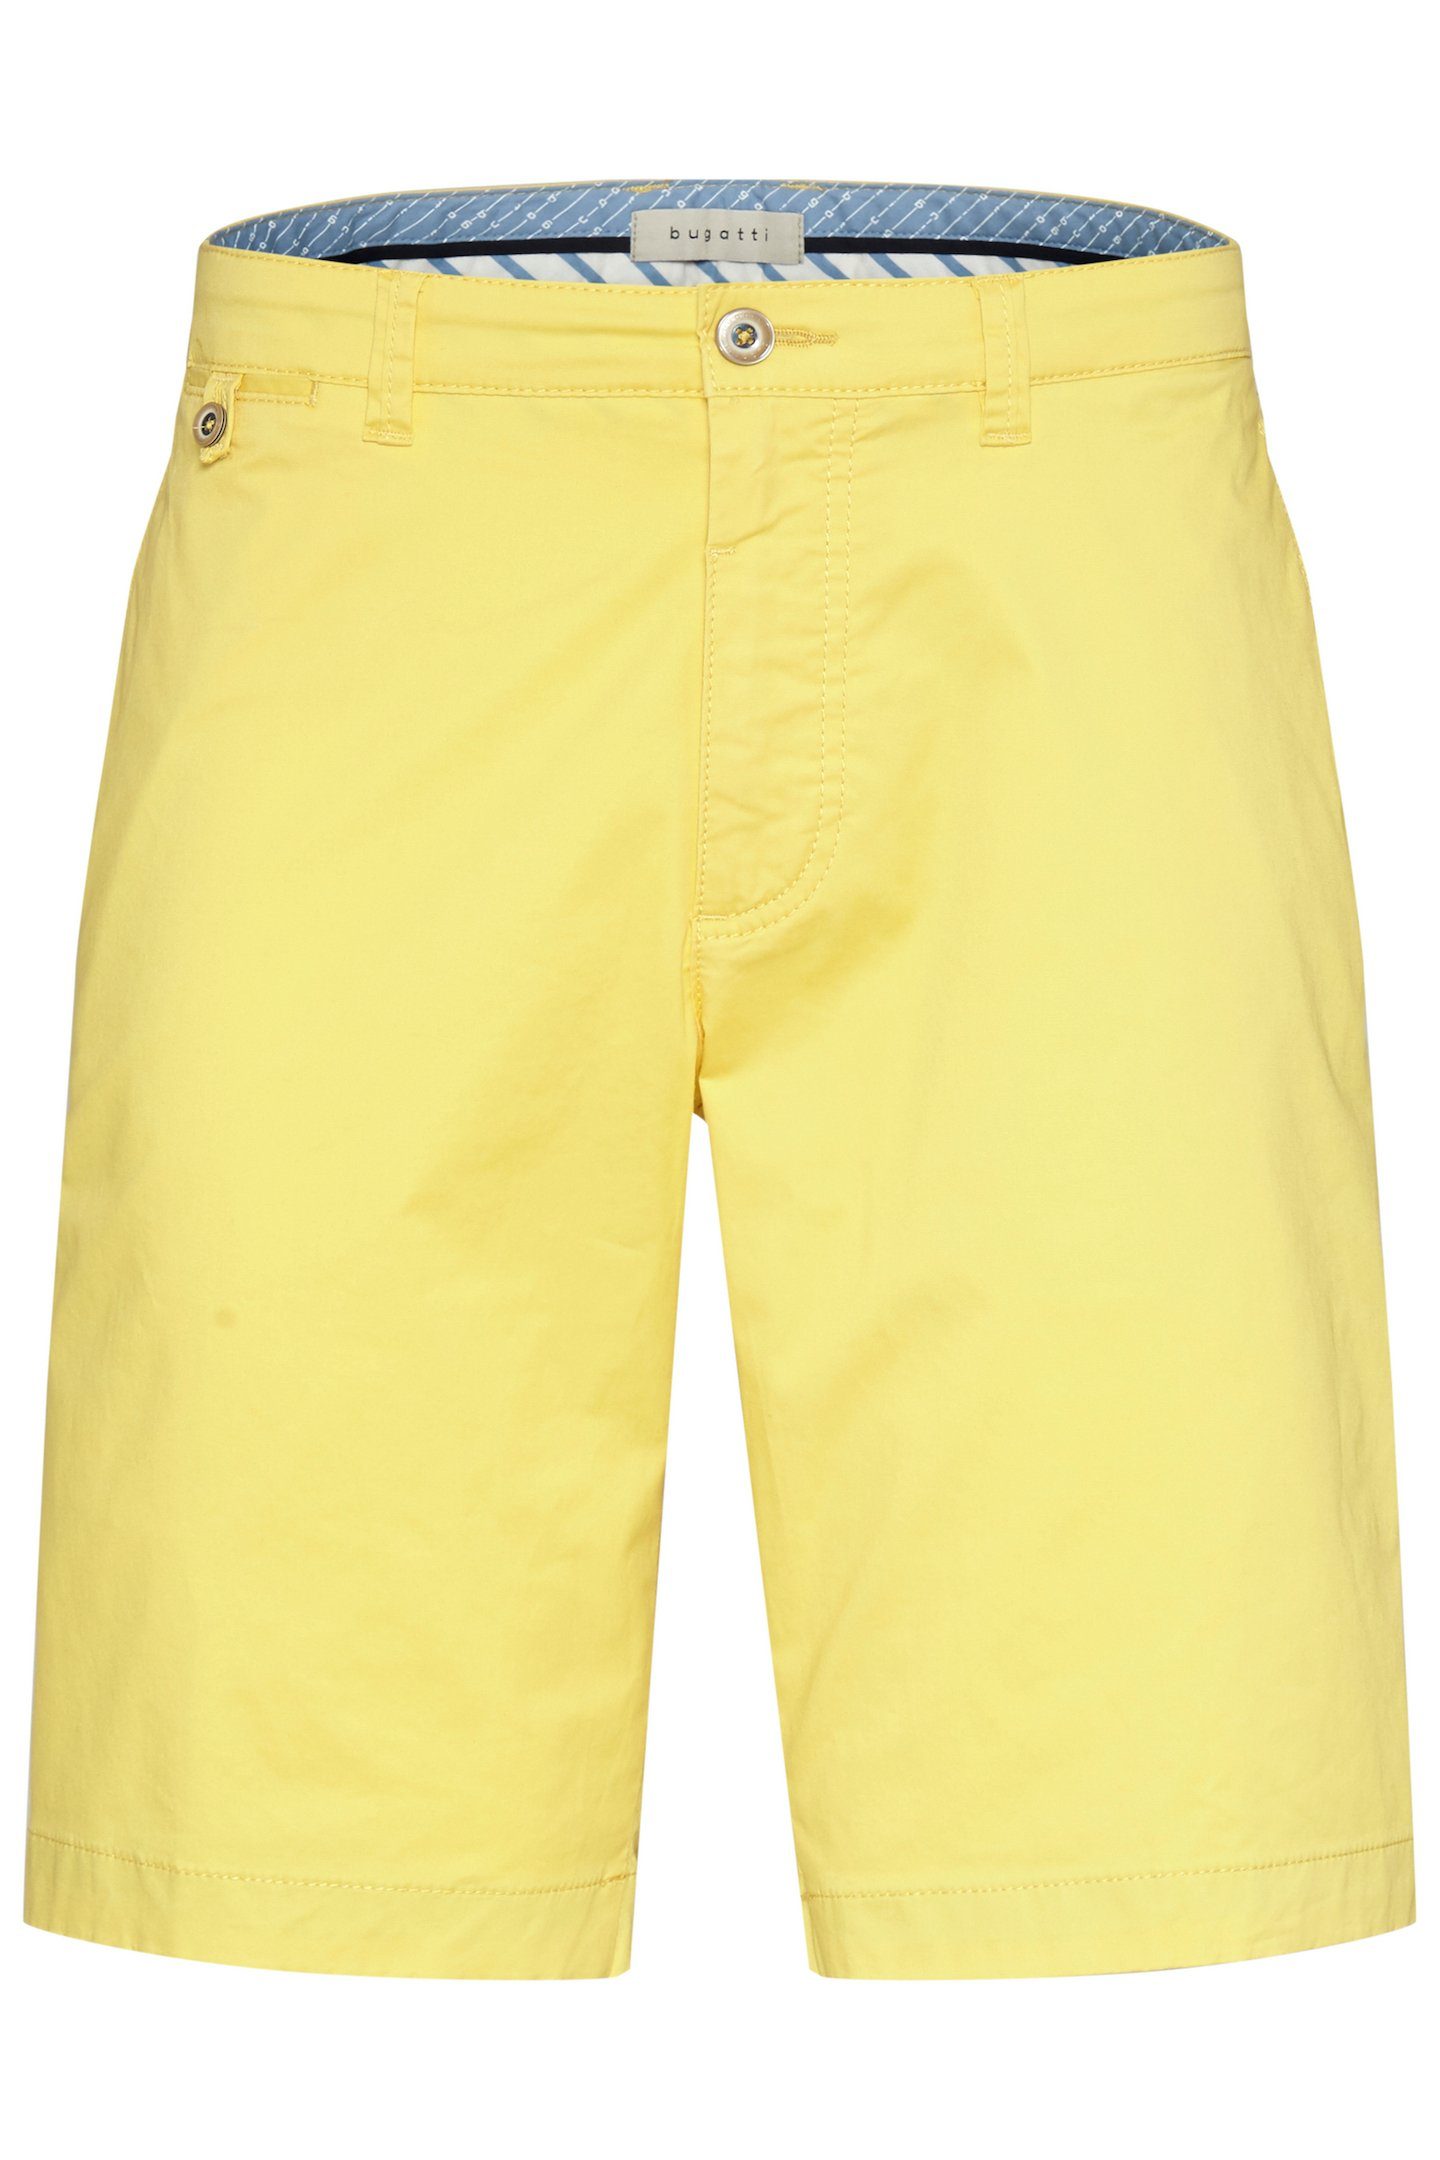 bugatti Shorts Look cleanen einem in gelb